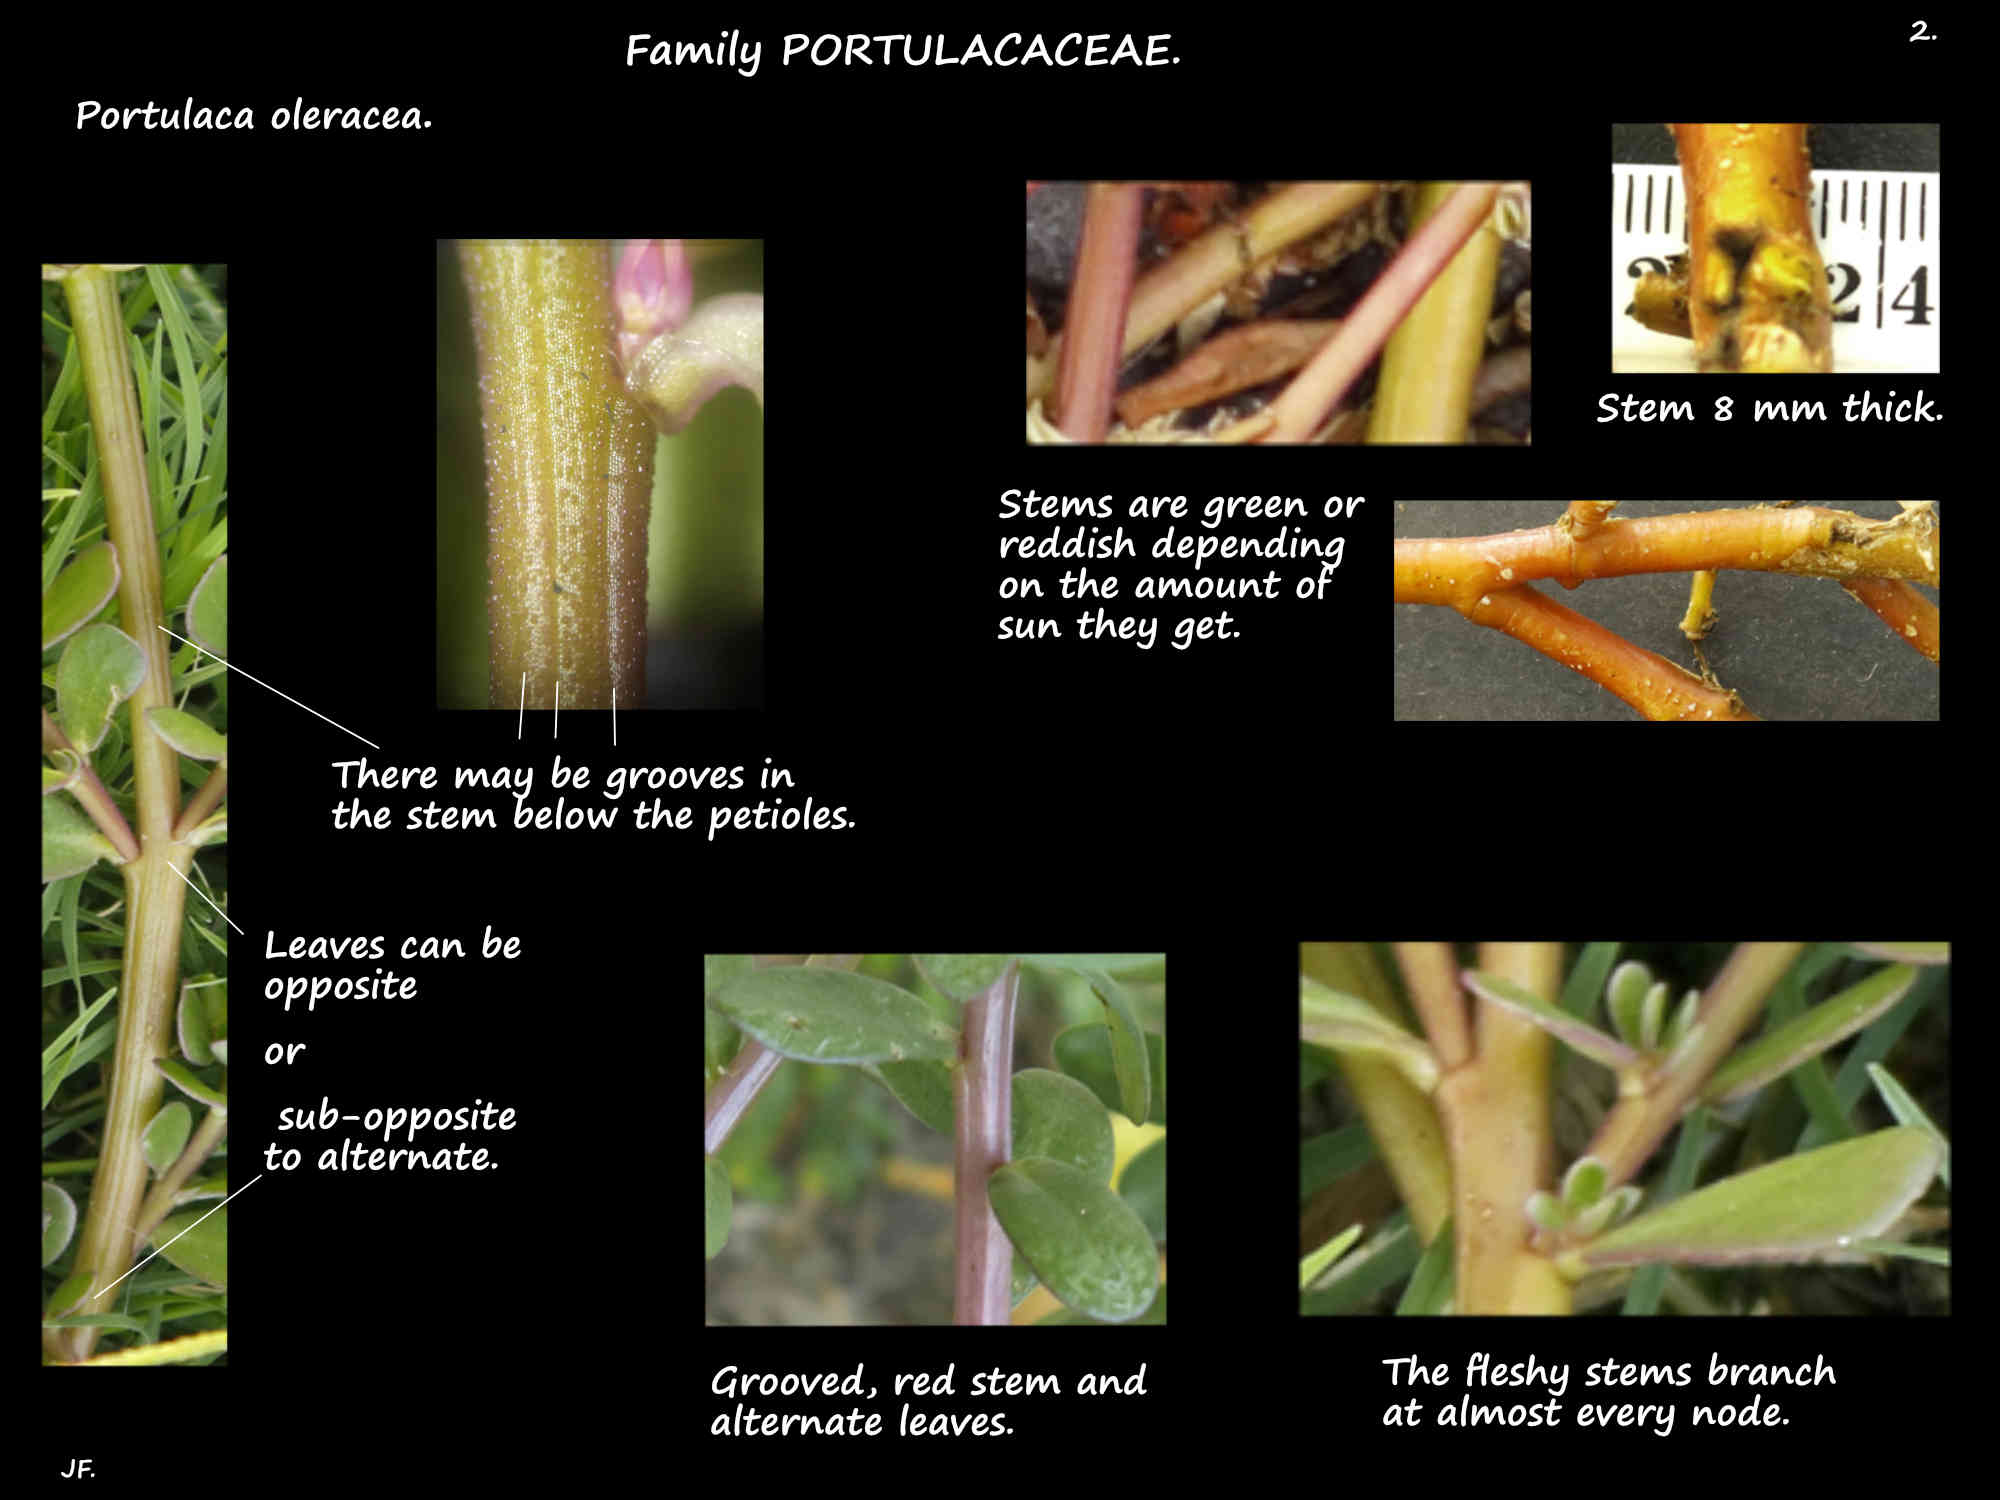 2 Portulaca oleracea reddish & grooved stems